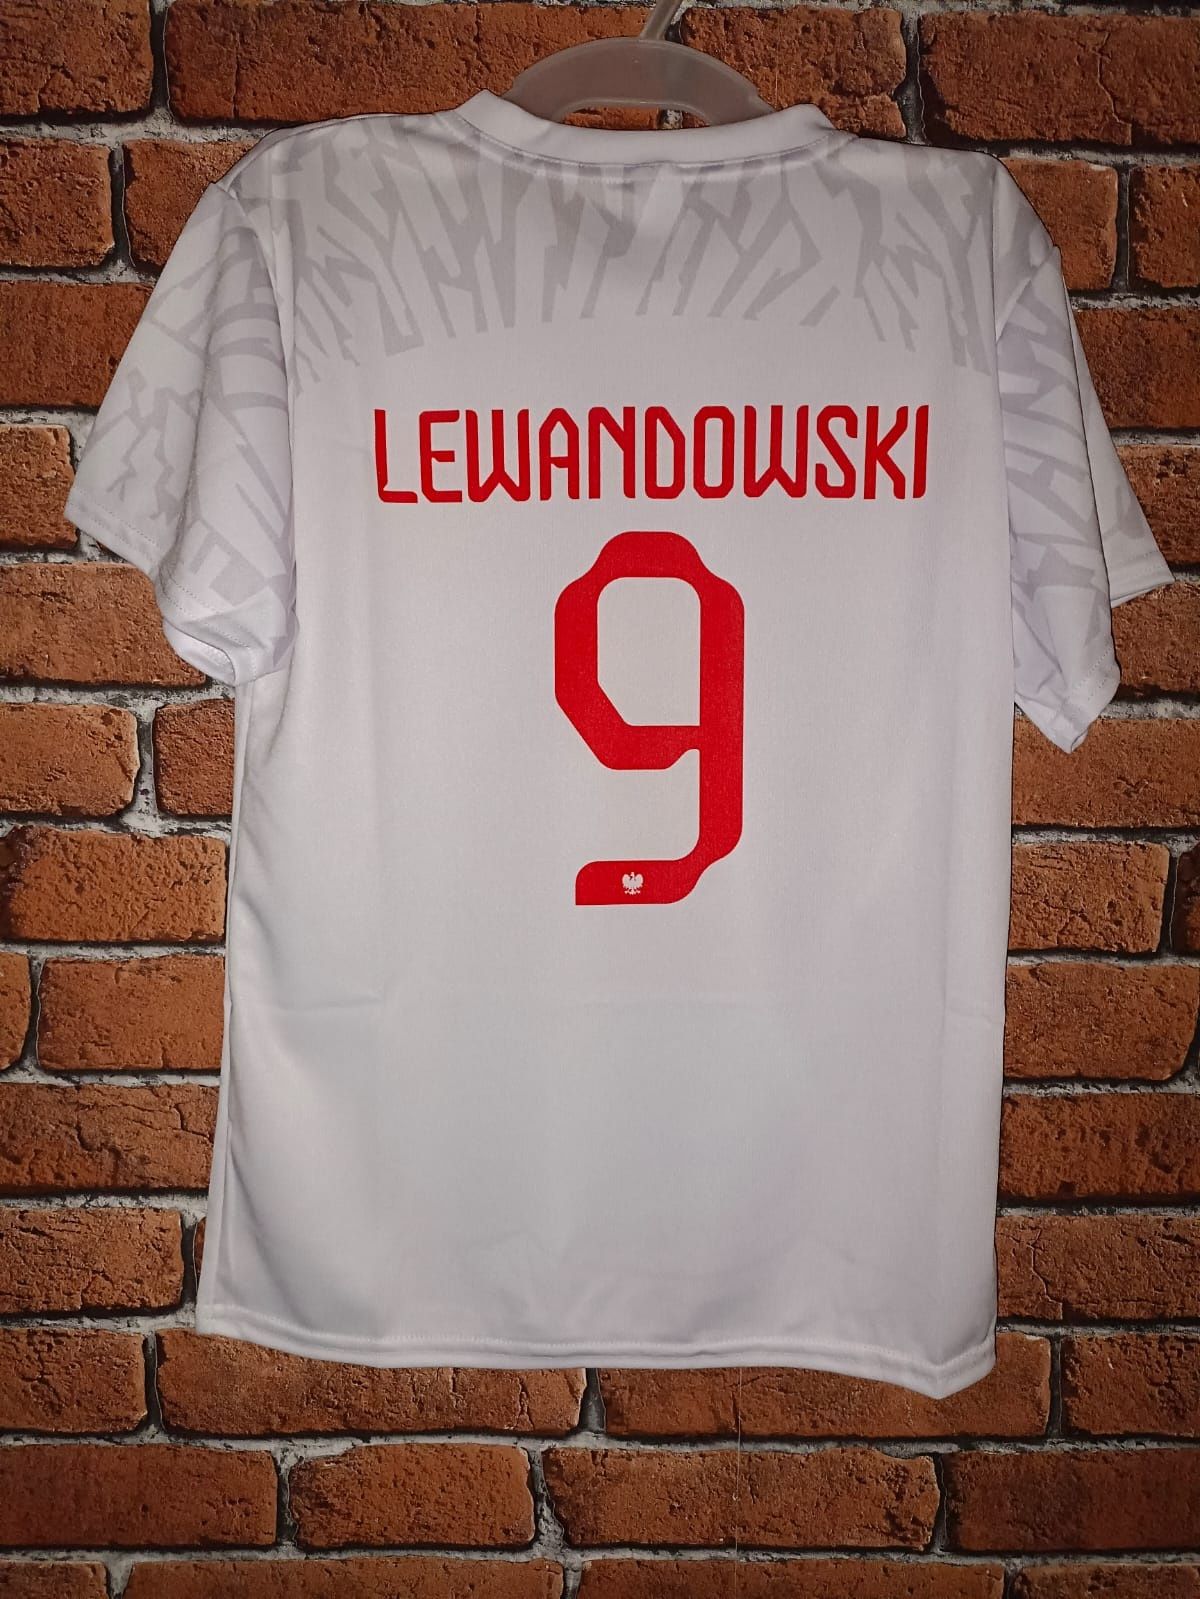 Koszulka piłkarska dziecięca Polska Lewandowski rozm. 134